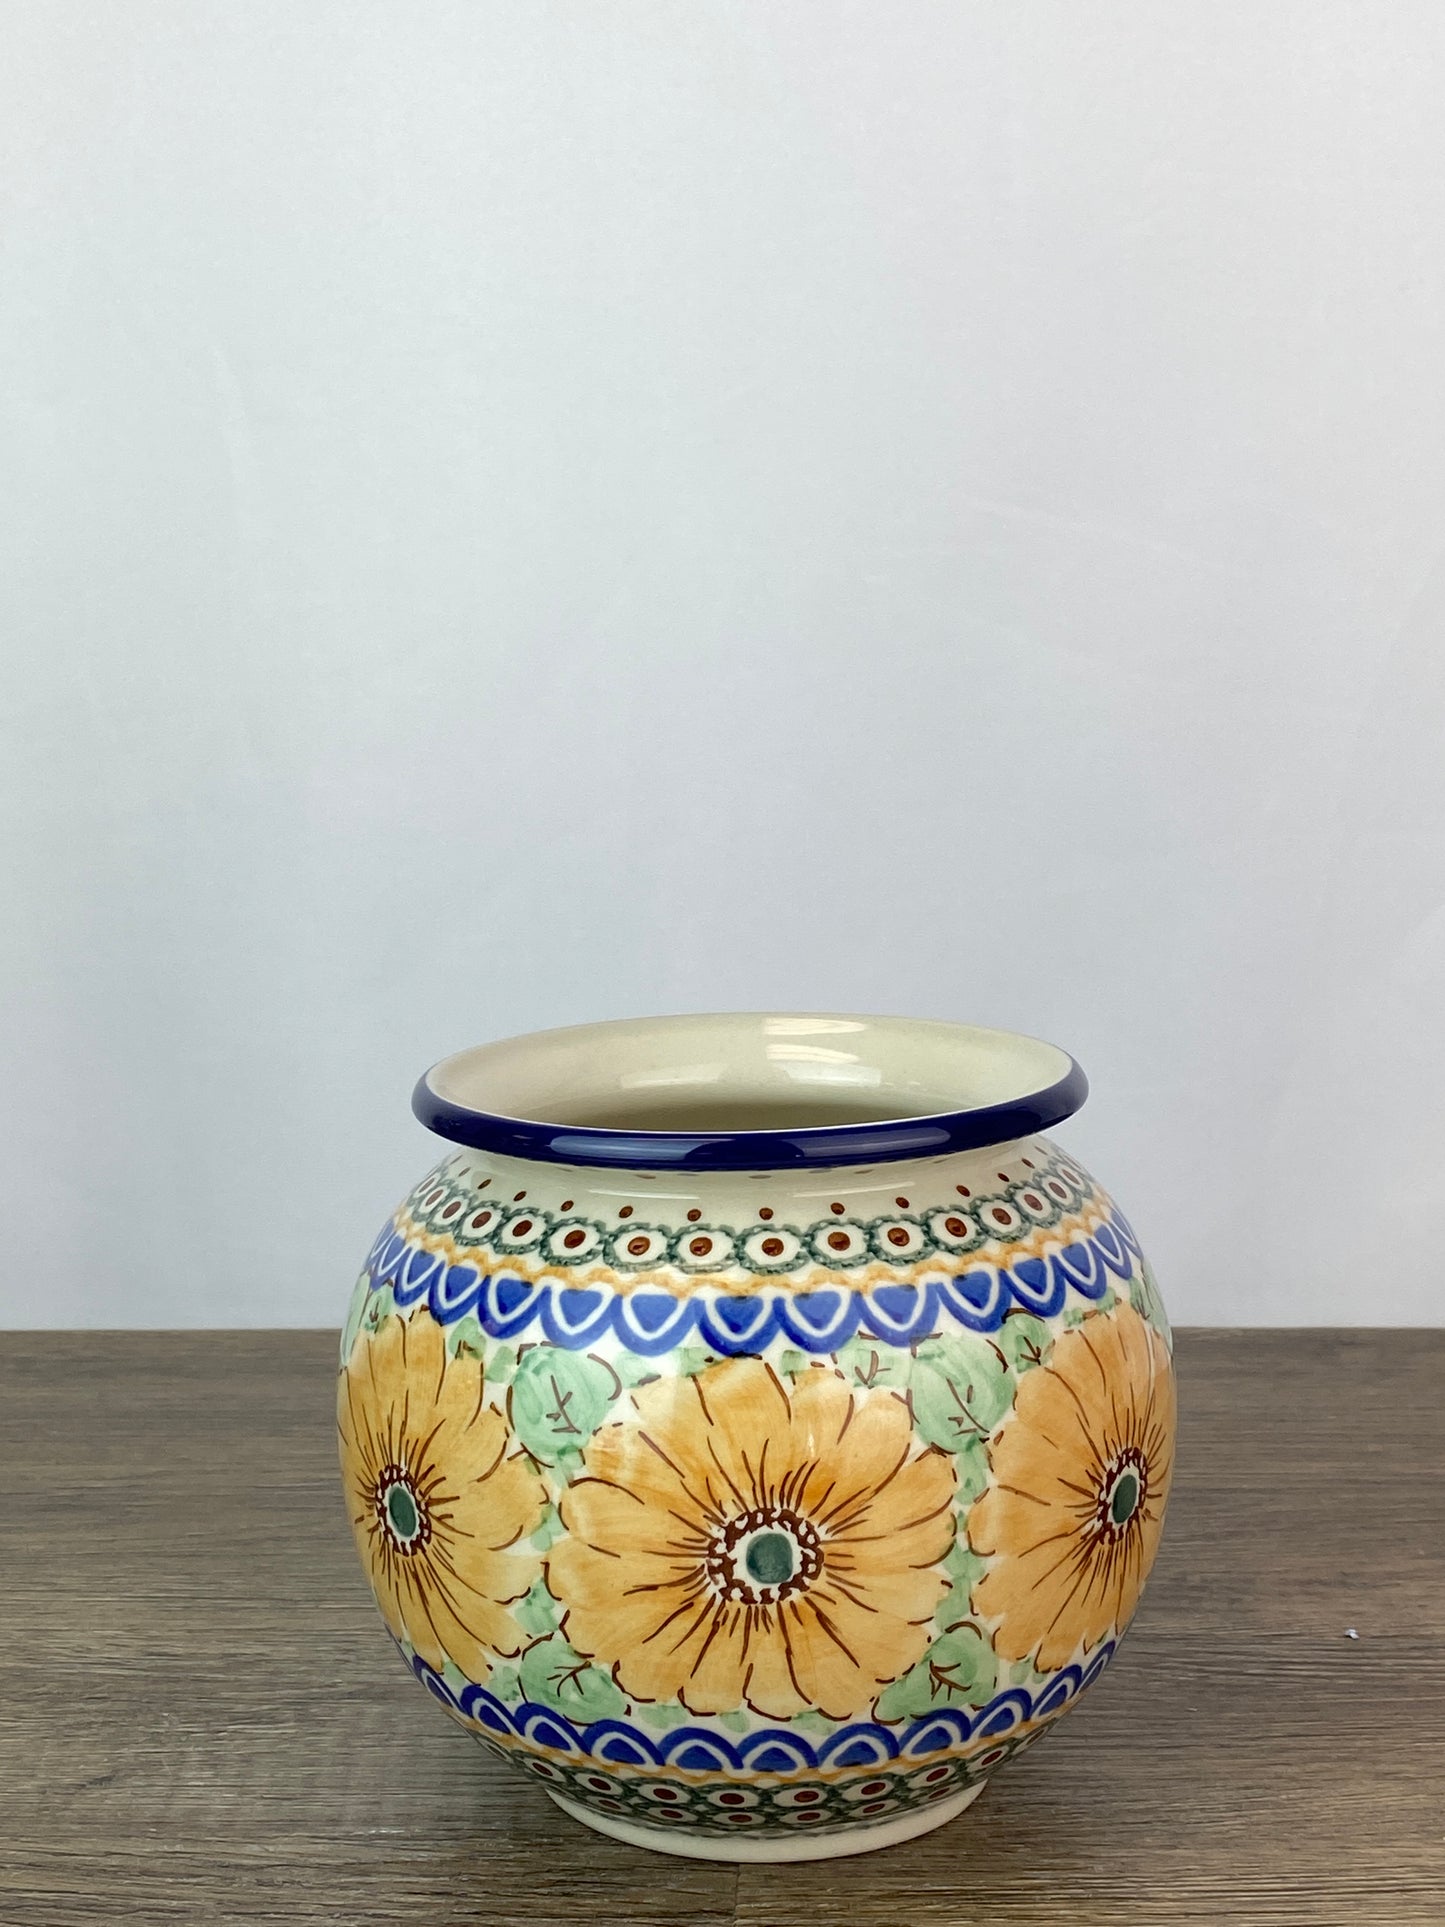 SALE Rounded Unikat Vase - Shape 359 - Pattern U740